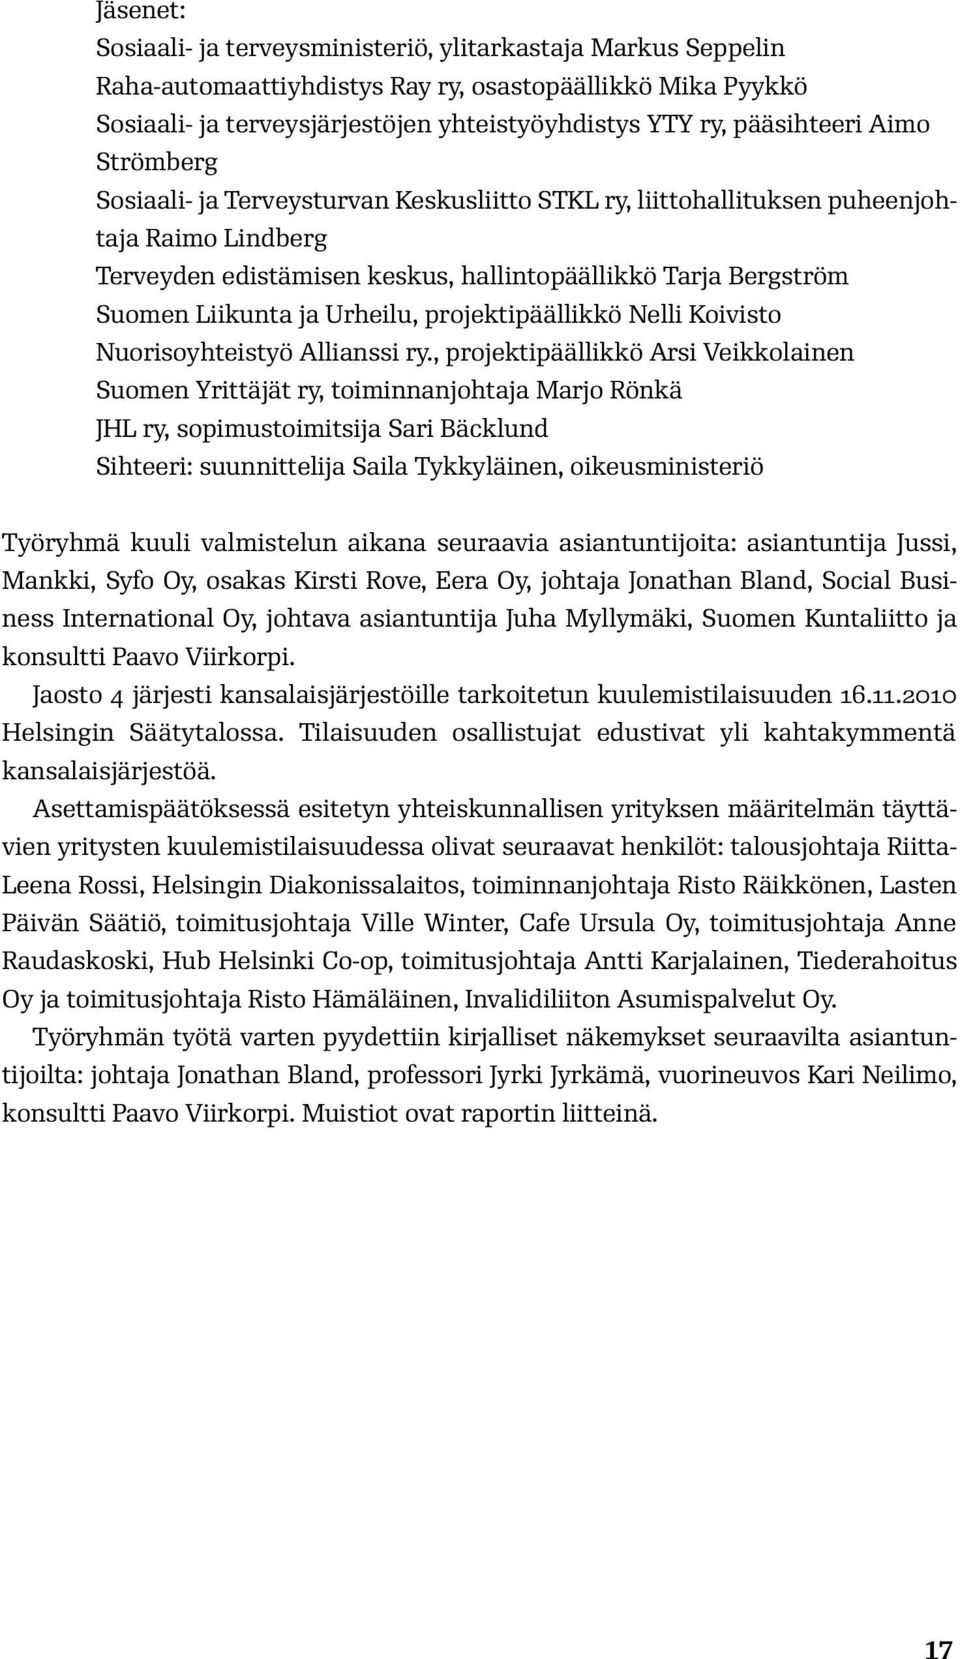 Liikunta ja Urheilu, projektipäällikkö Nelli Koivisto Nuorisoyhteistyö Allianssi ry.